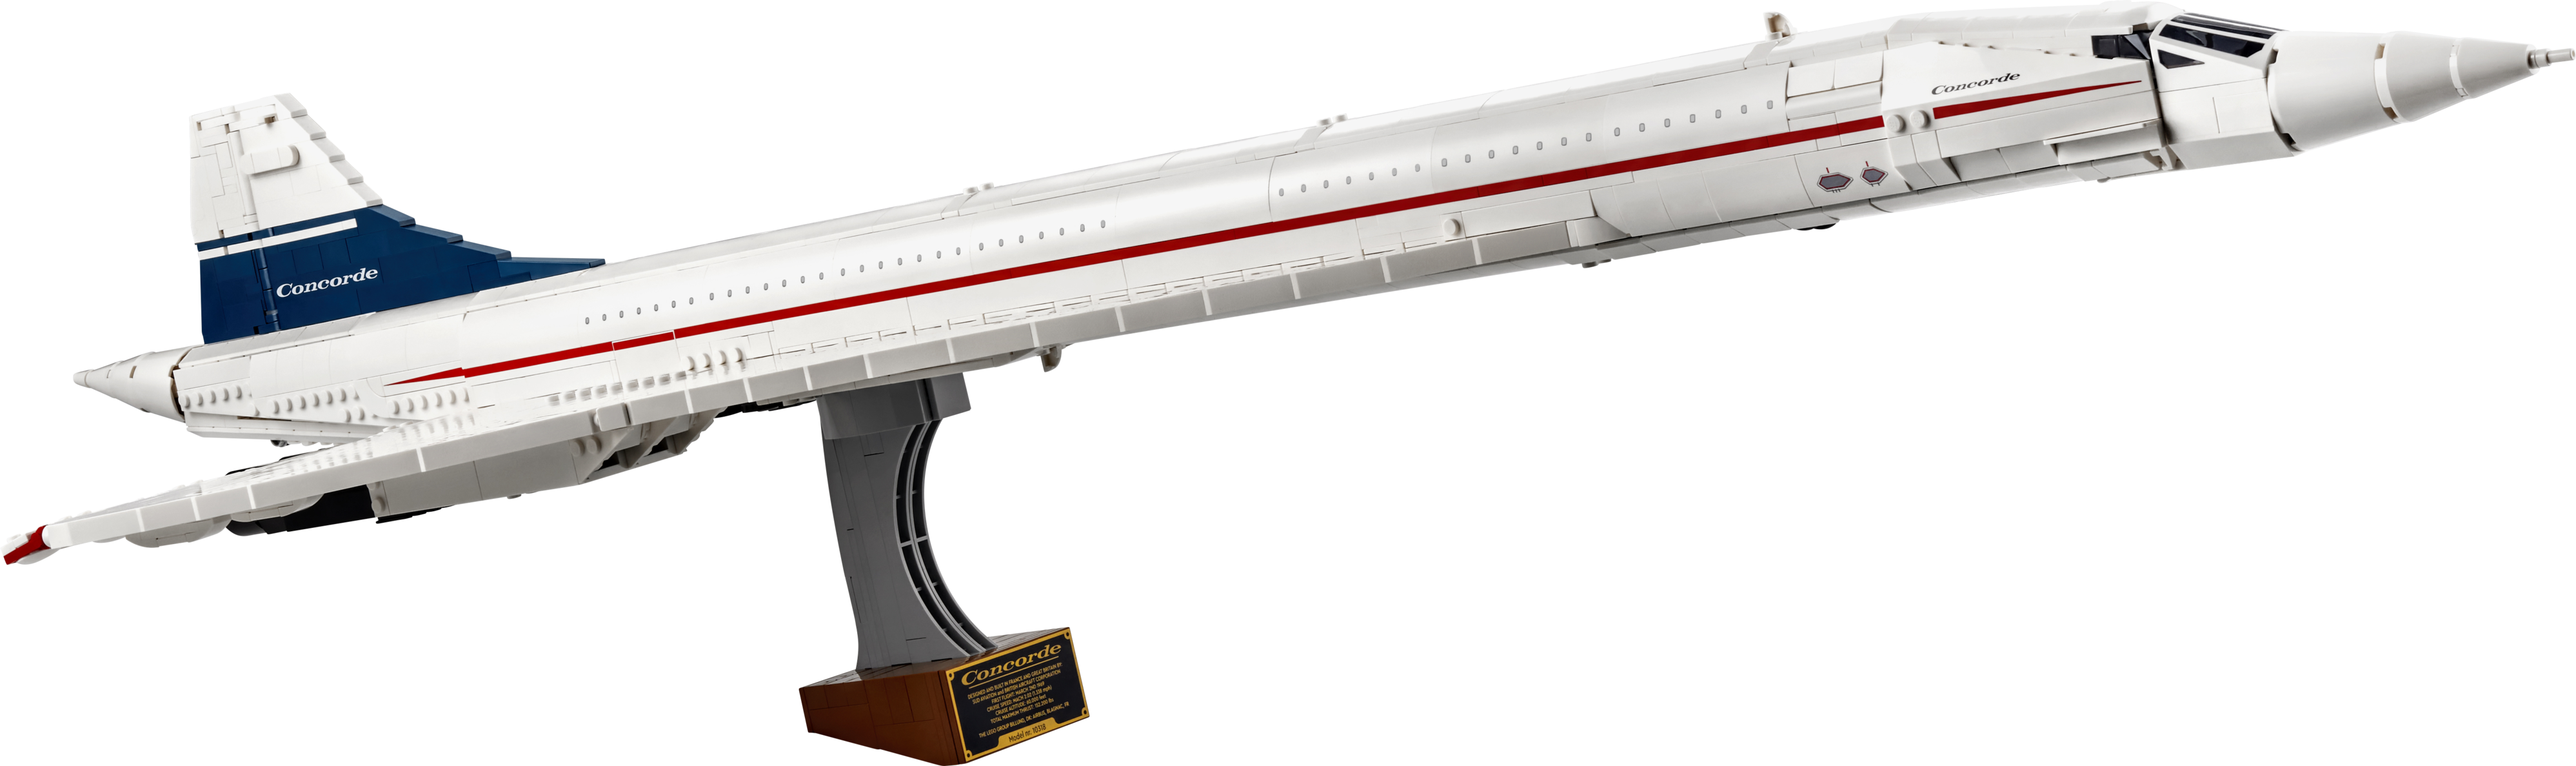 Aanbieding van Concorde voor 199,99€ bij Lego